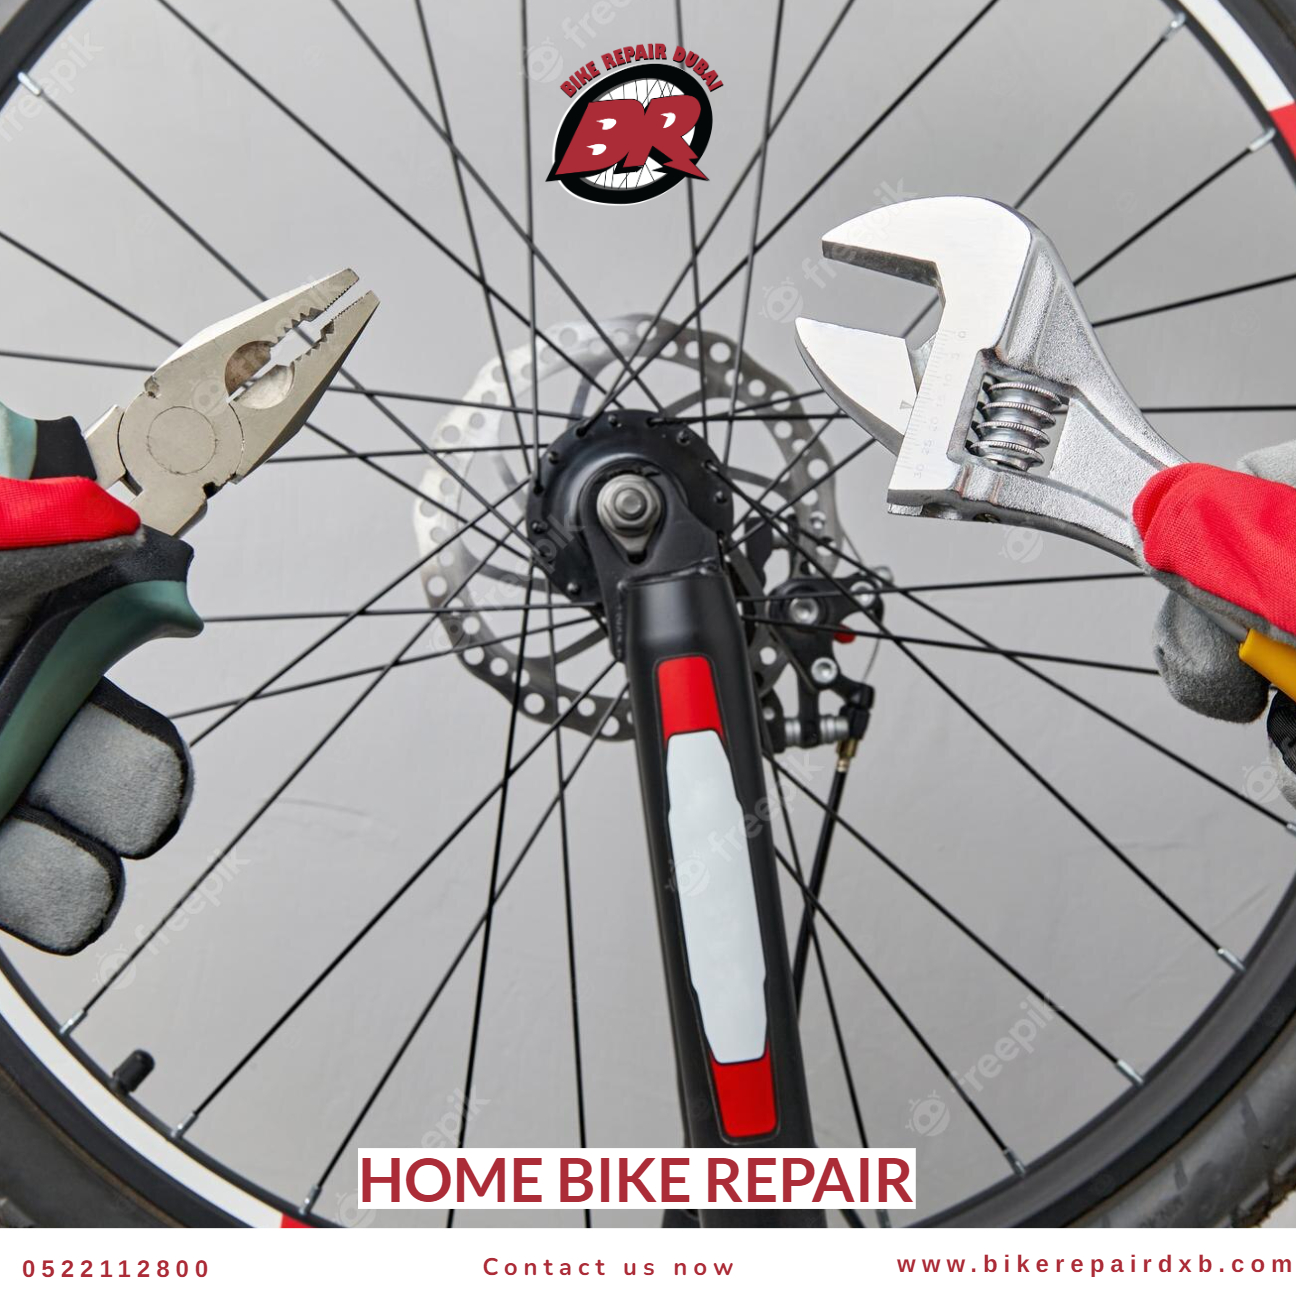 Home bike repair